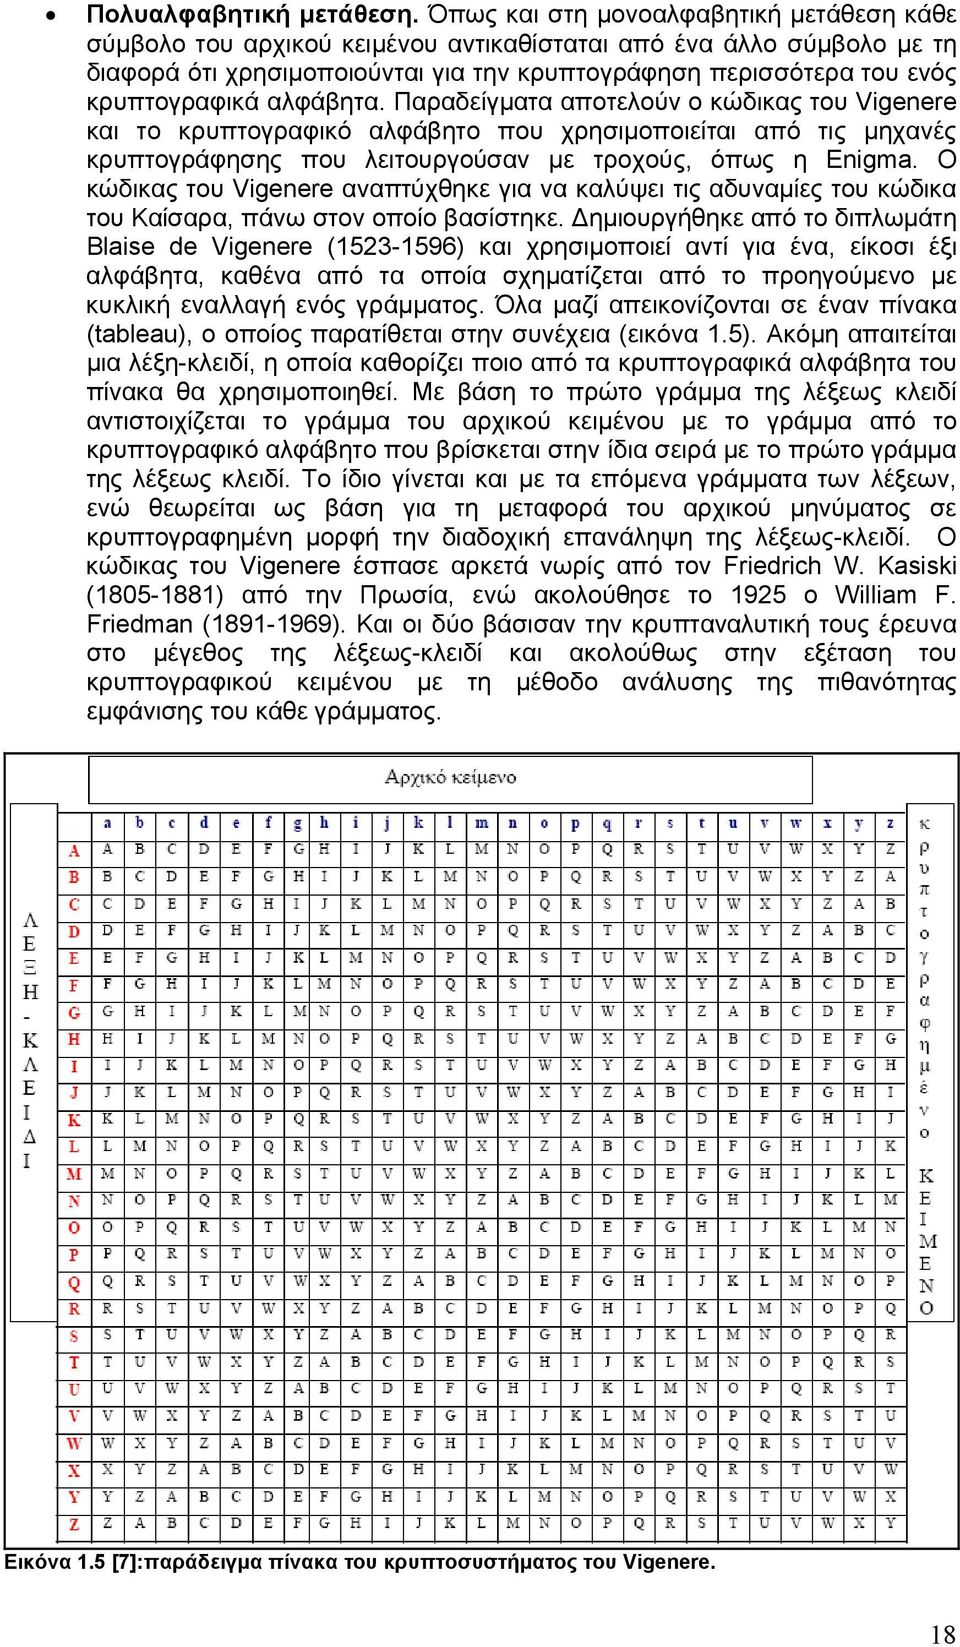 αλφάβητα. Παραδείγματα αποτελούν ο κώδικας του Vigenere και το κρυπτογραφικό αλφάβητο που χρησιμοποιείται από τις μηχανές κρυπτογράφησης που λειτουργούσαν με τροχούς, όπως η Enigma.